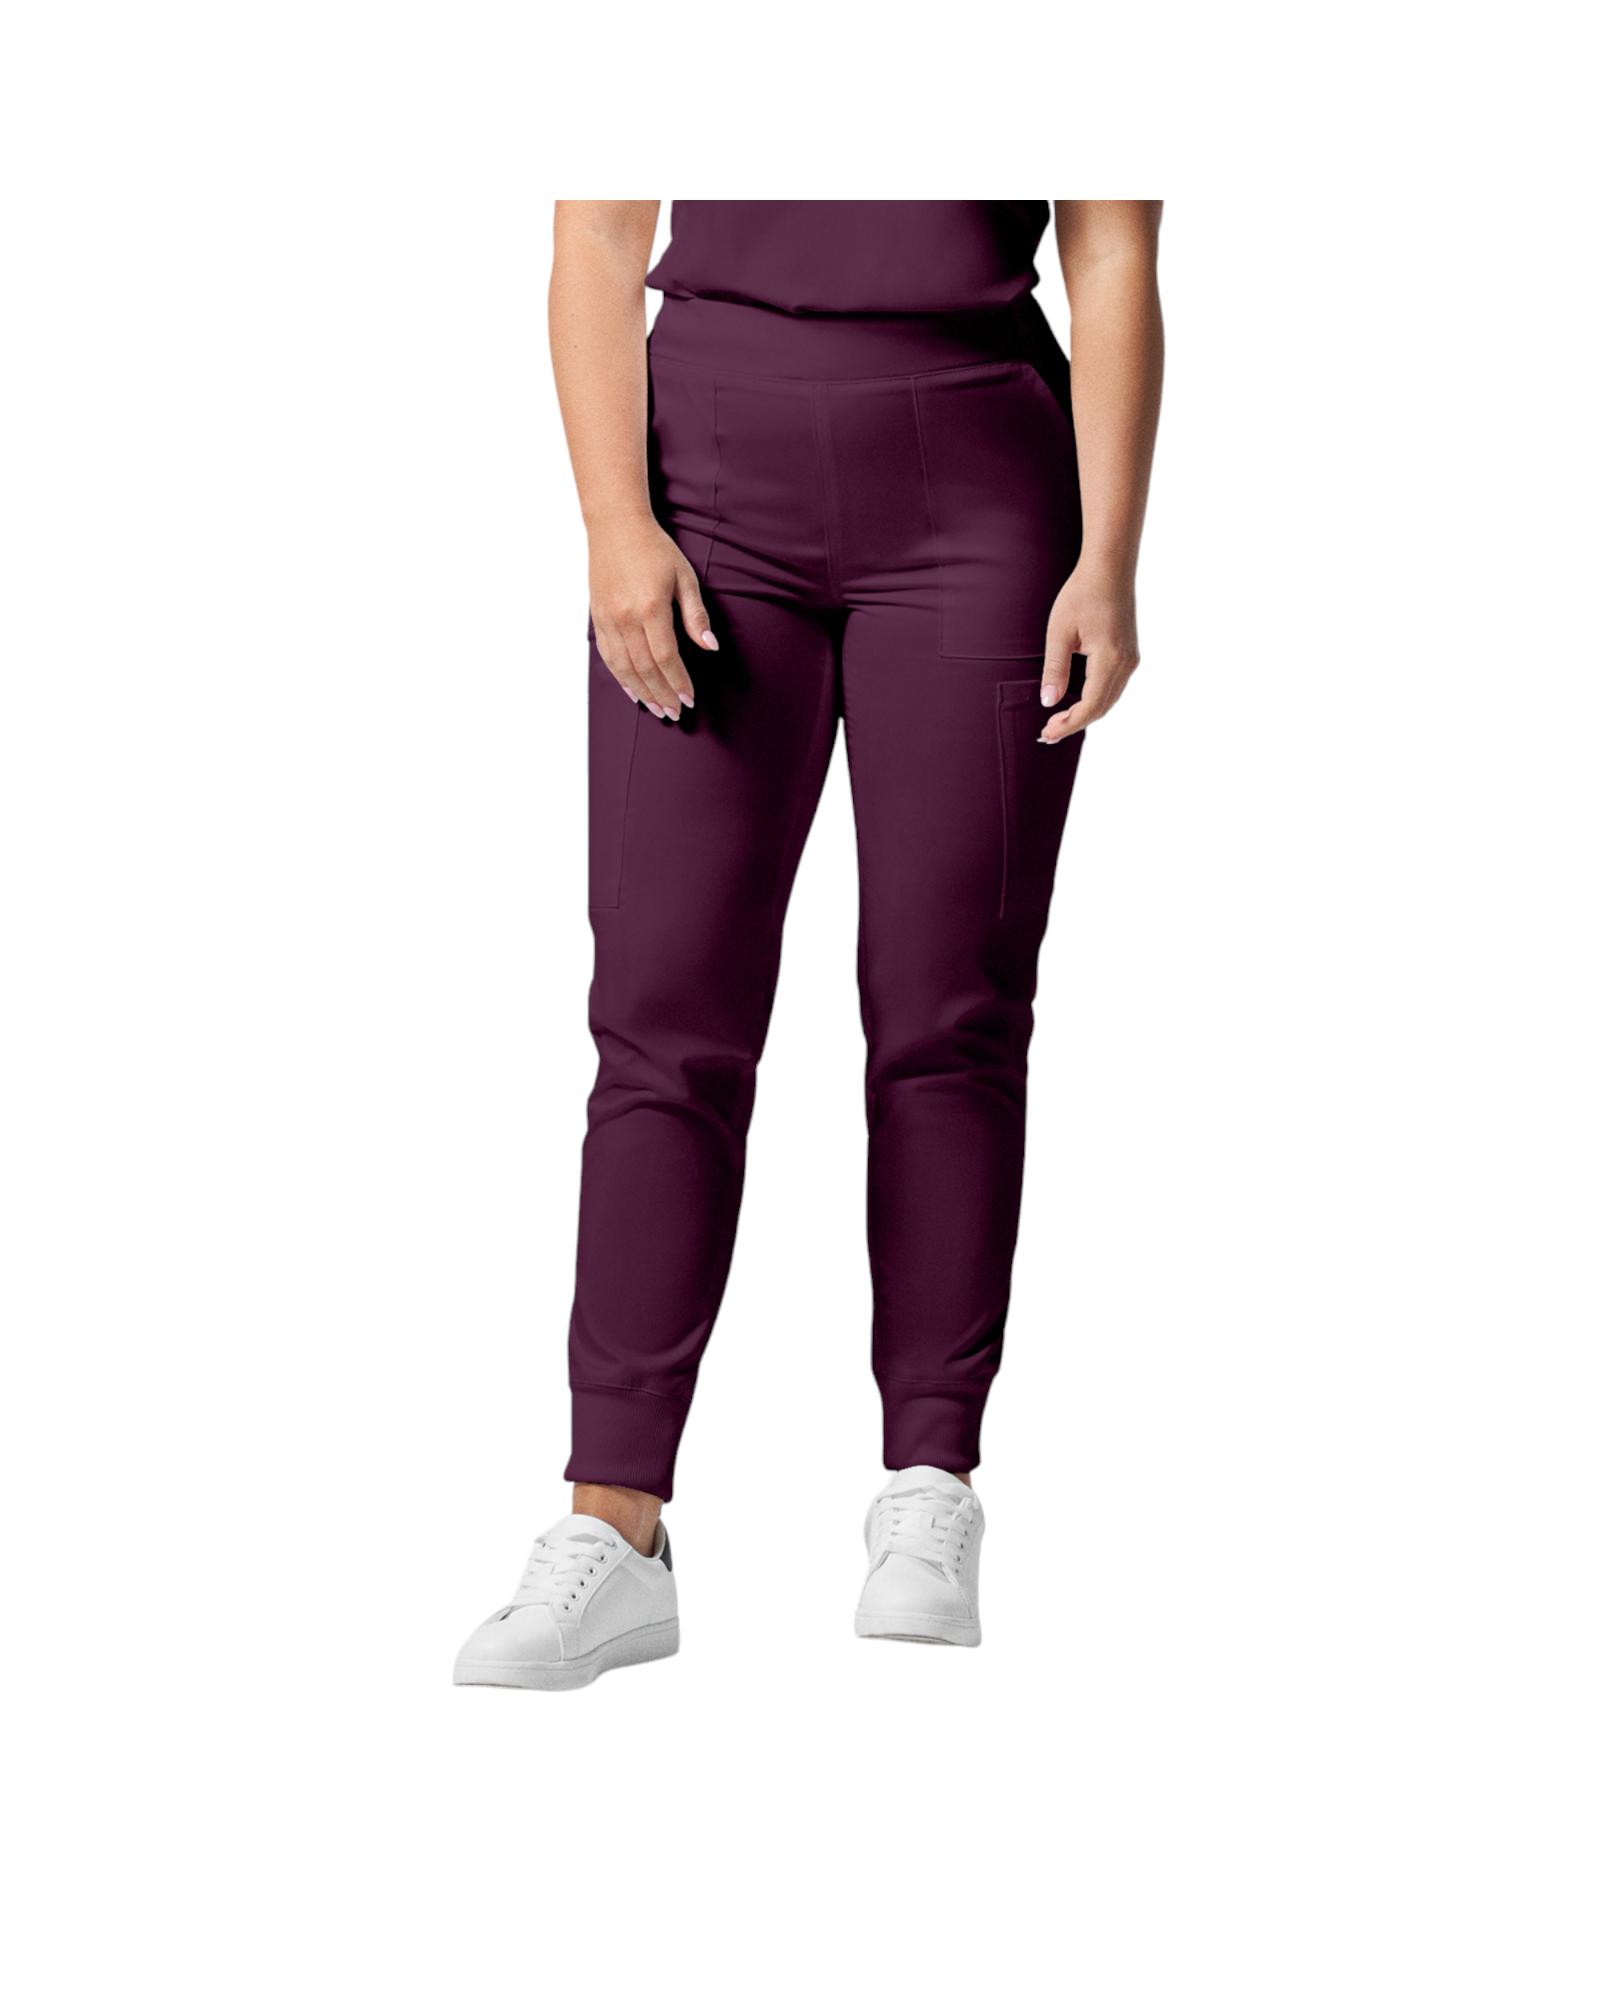 Pantalon de style jogger 6 poches pour femmes Landau Proflex #LB406 couleur Bourgogne